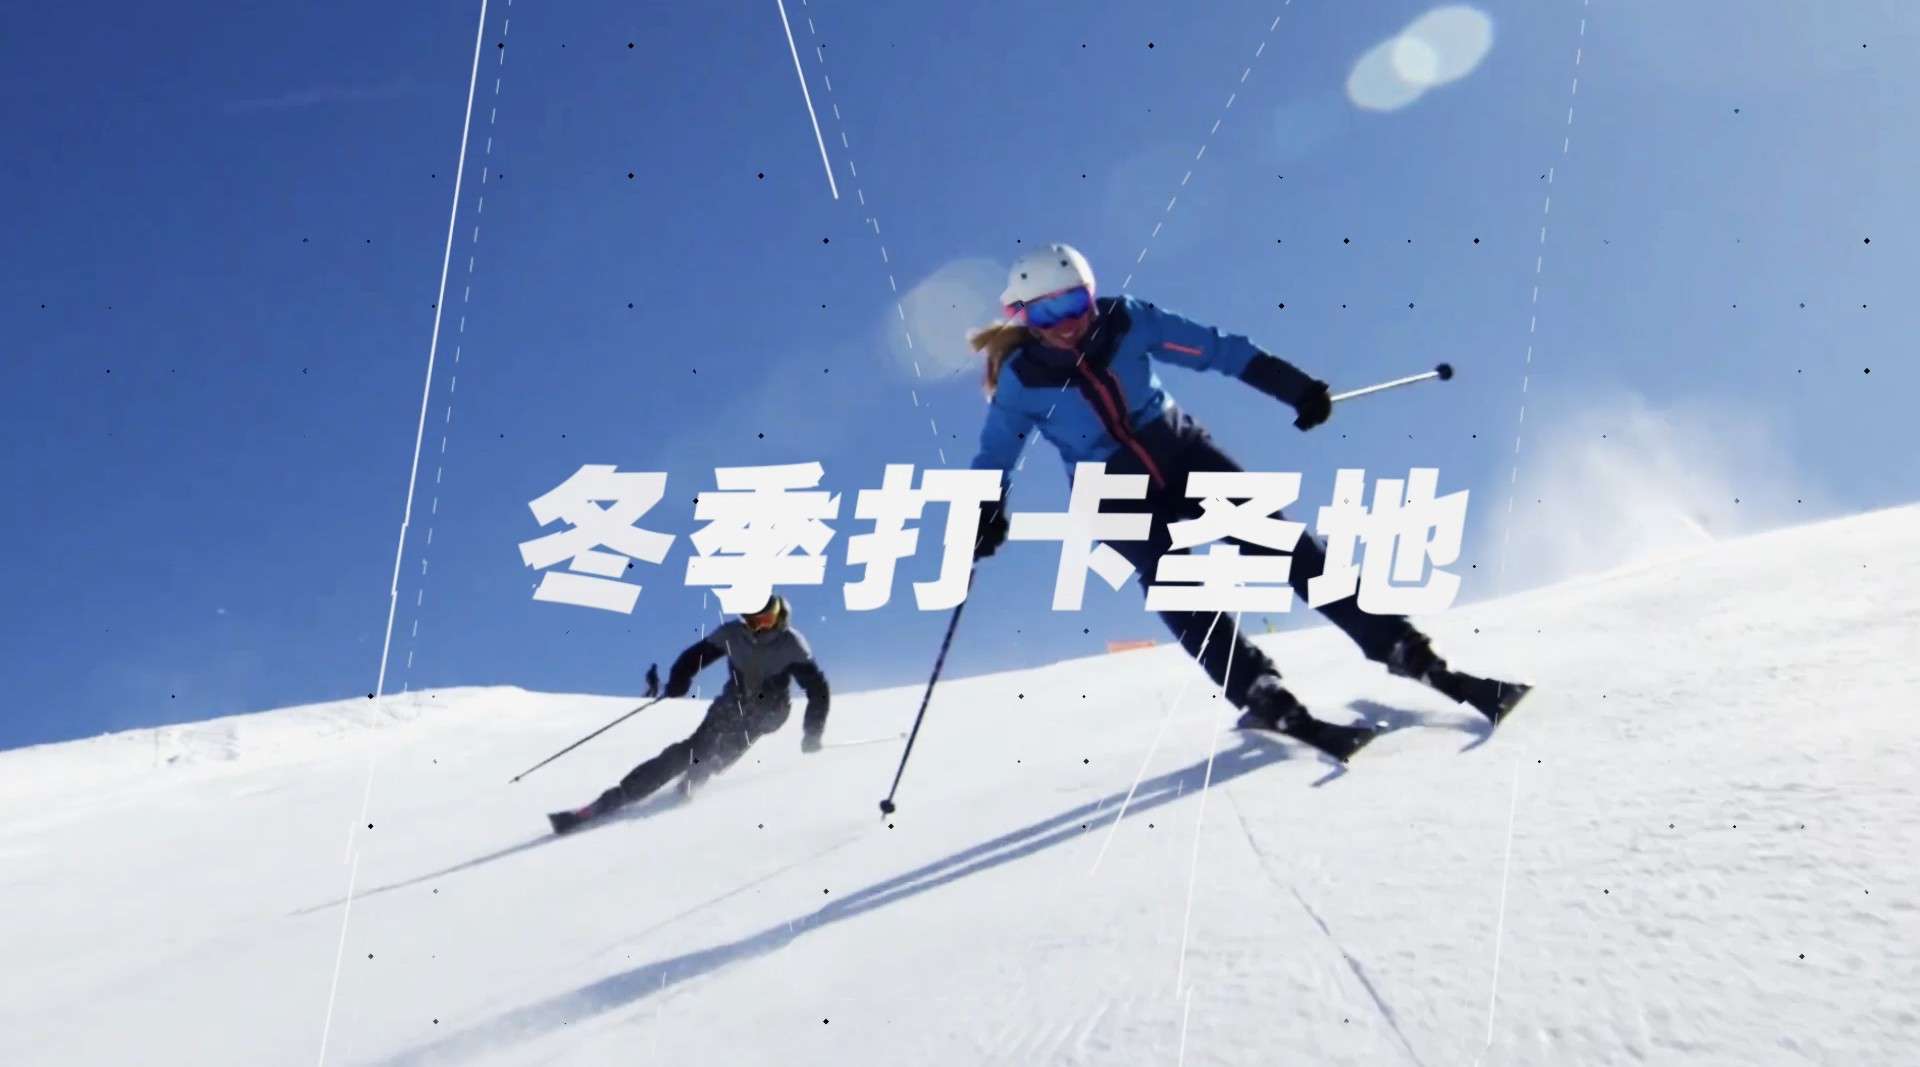 藏马山滑雪场15秒朋友圈广告